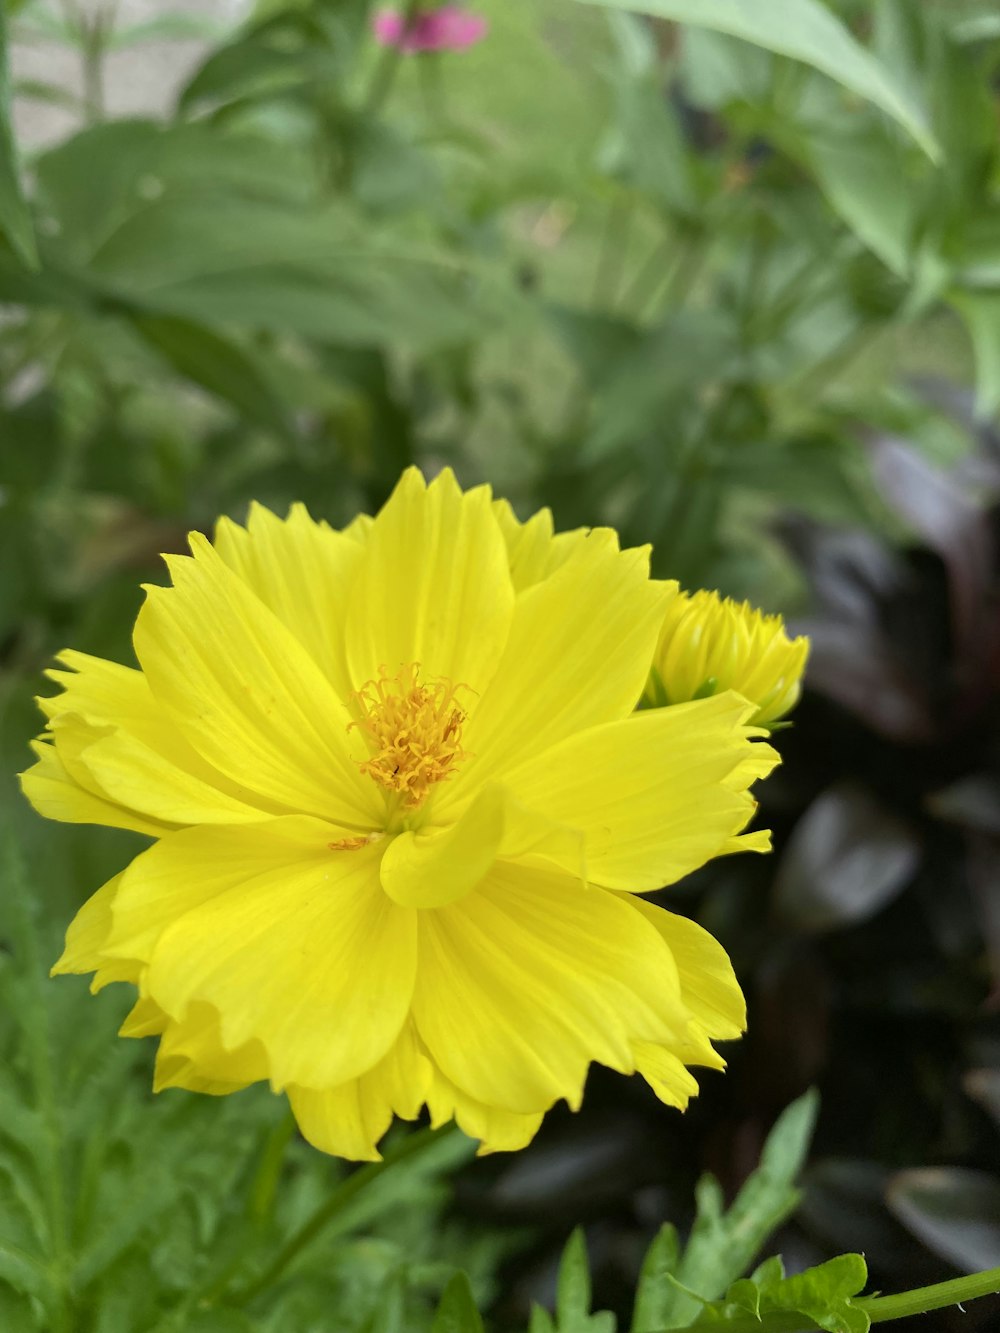 a yellow flower in a garden